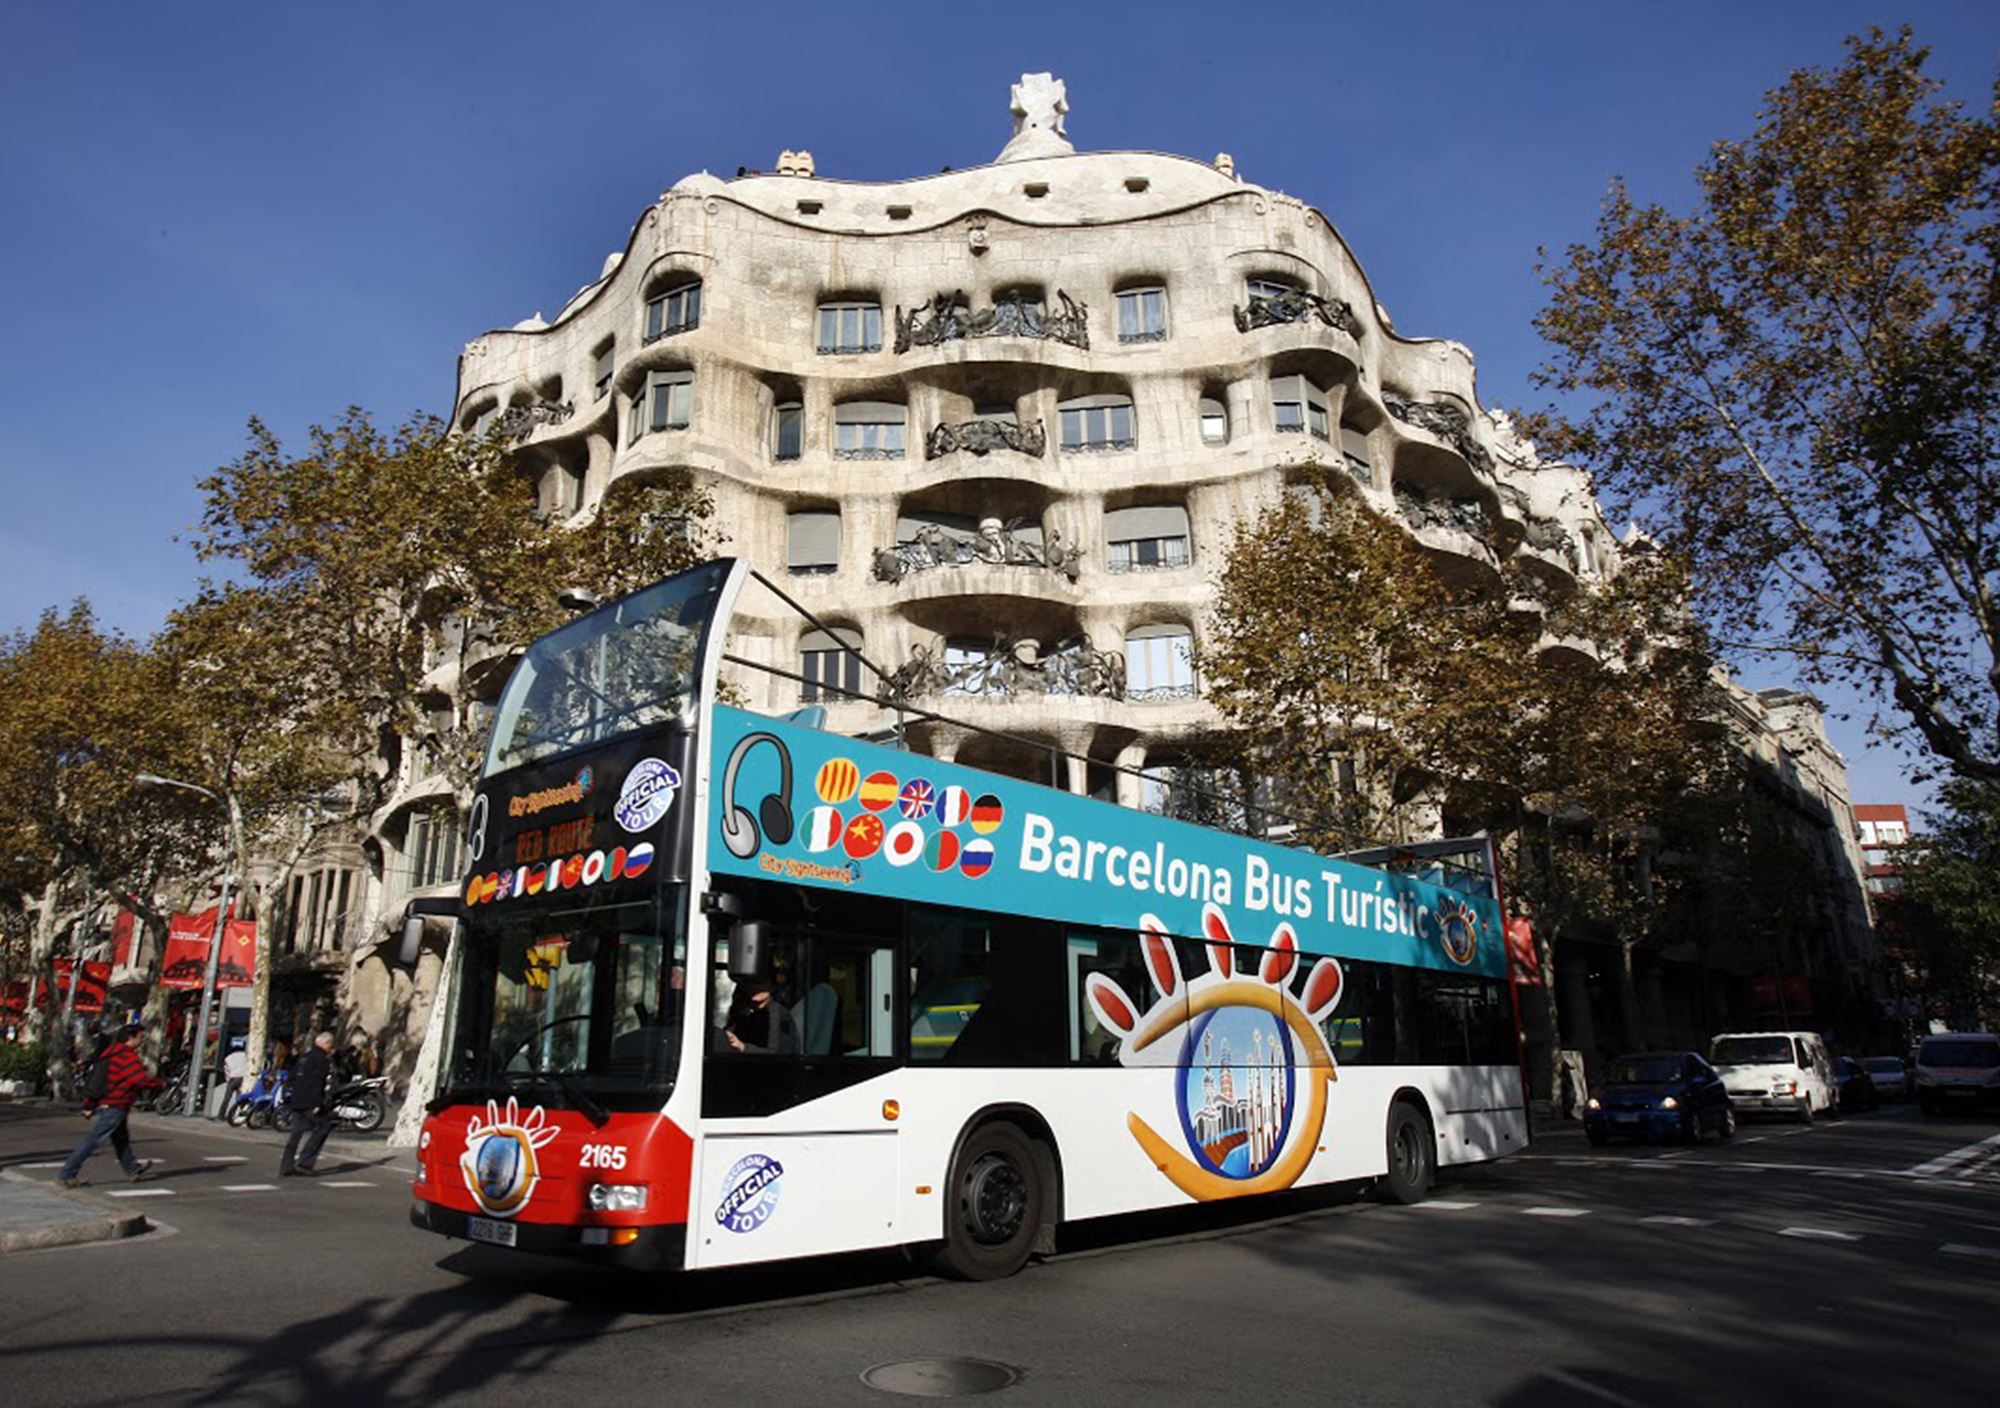 reservieren kaufen buchung tickets besucht Touren Fahrkarte karte karten Eintrittskarten Touristikbus City Sightseeing Barcelona